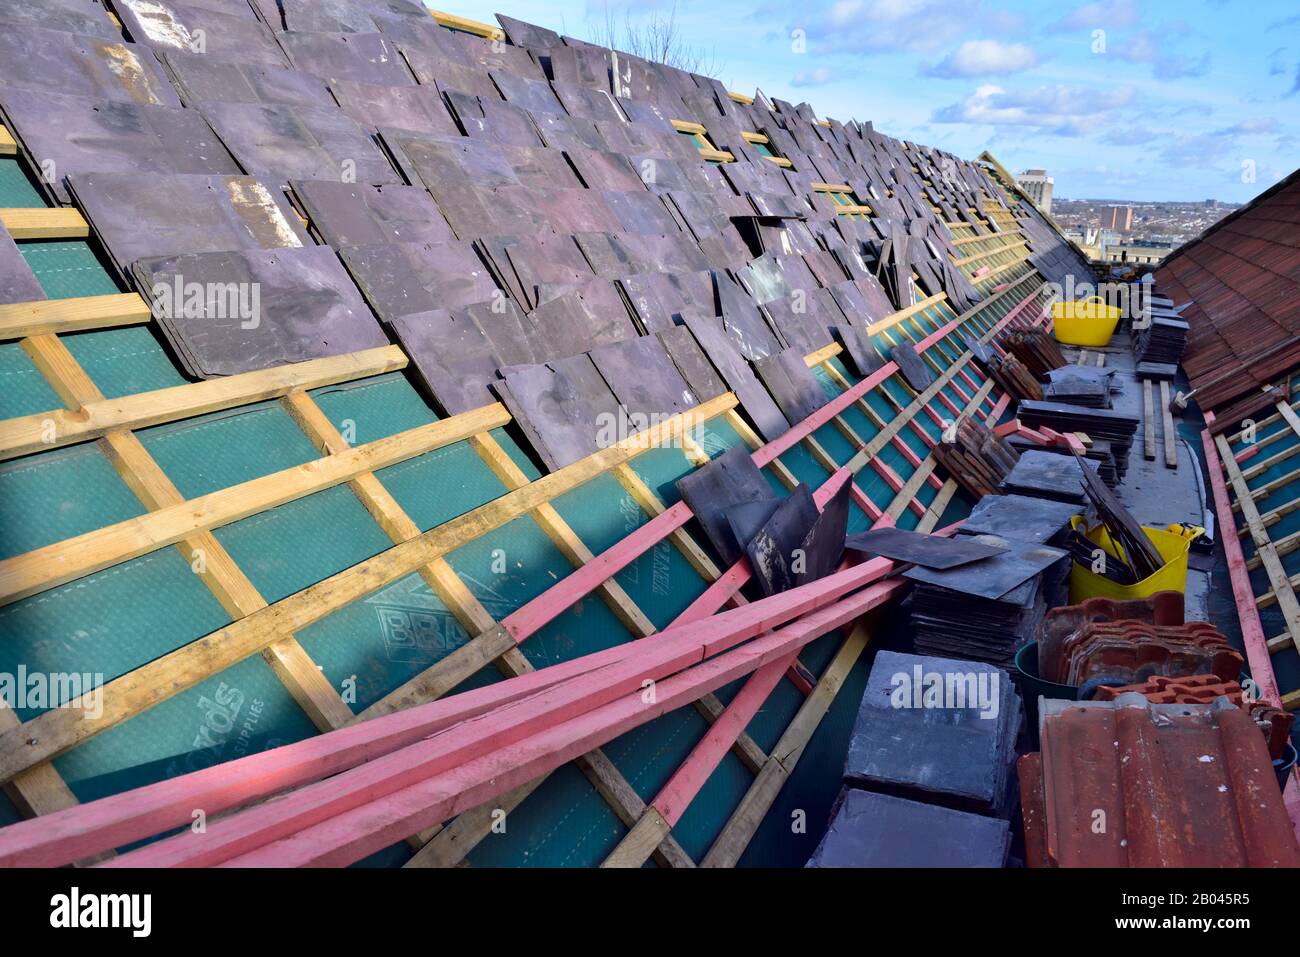 Le toit en ardoise est reconstruit lors de la rénovation du bâtiment, en Angleterre, au Royaume-Uni Banque D'Images